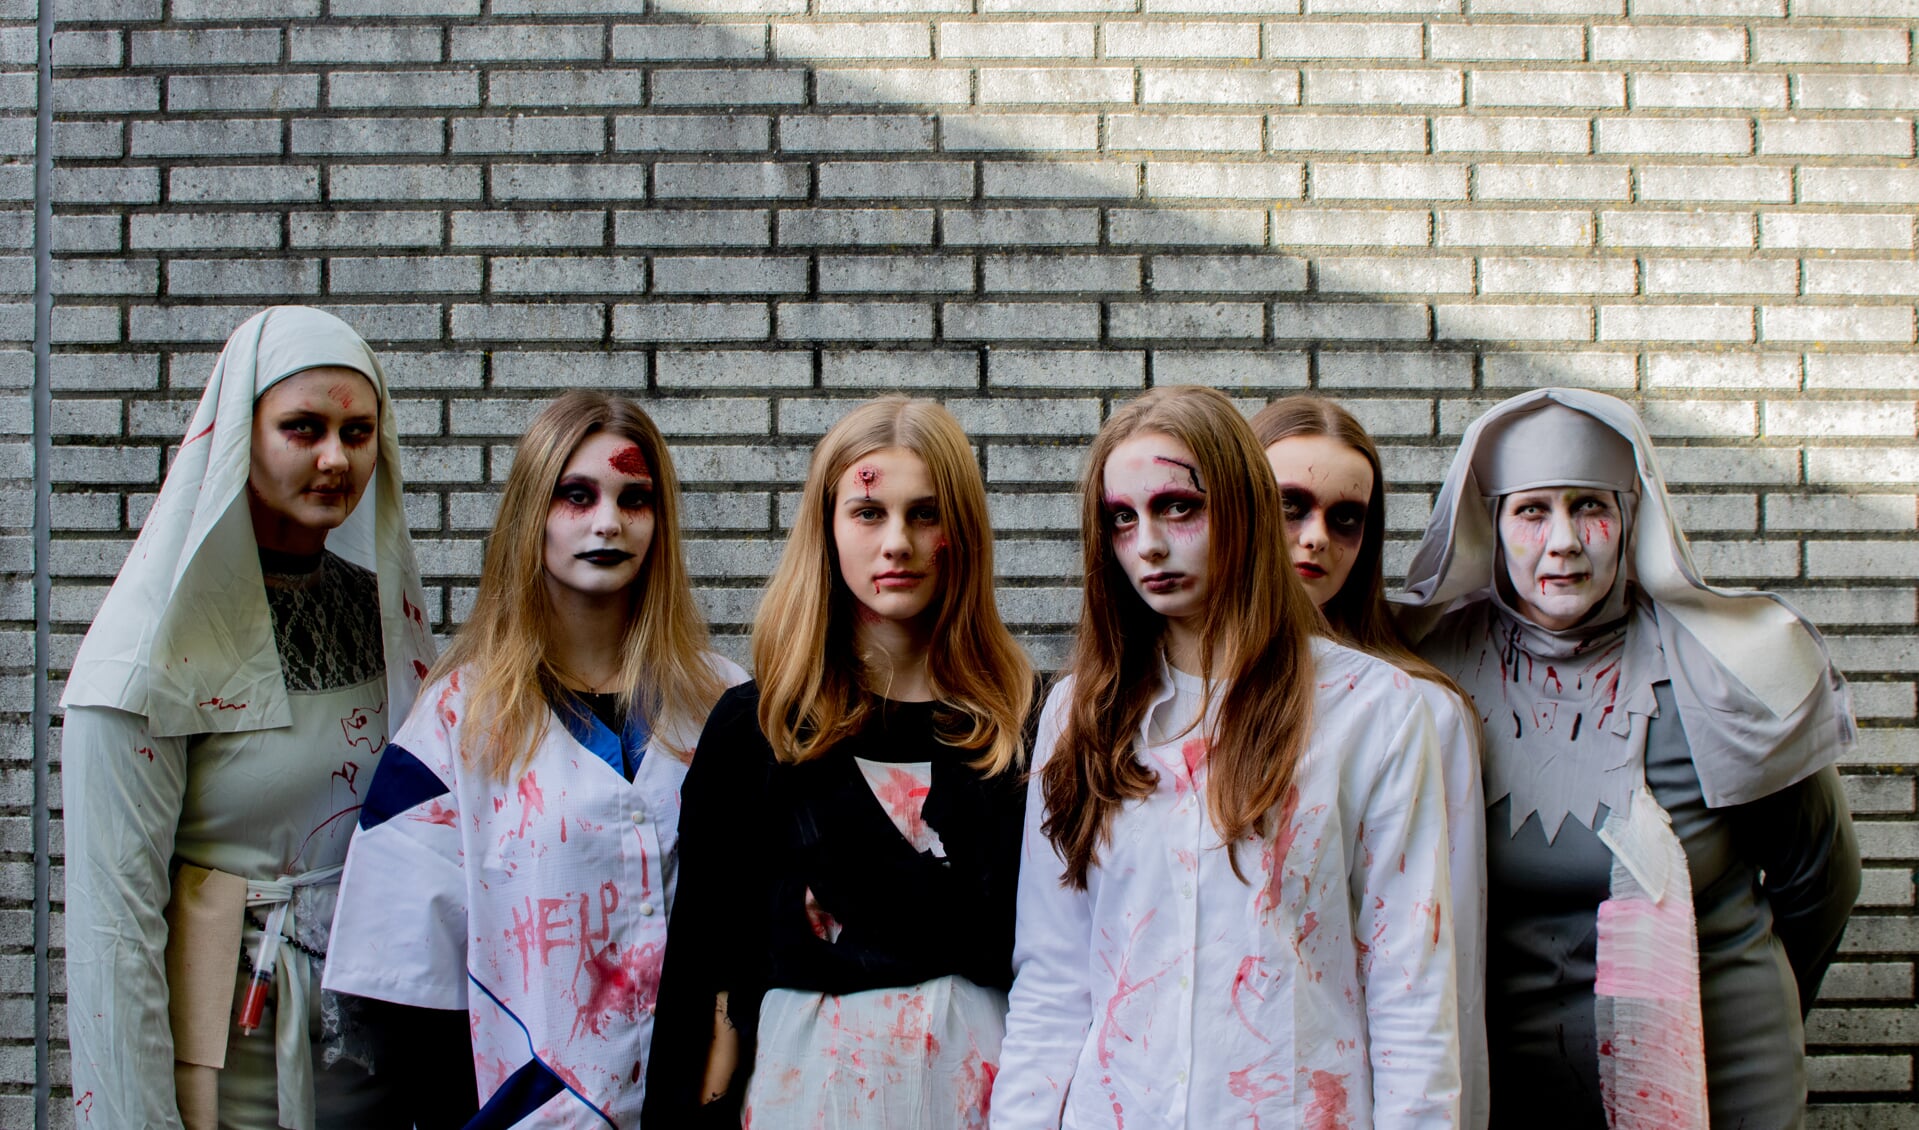 The Halloween Event - een spooktocht voor jongeren - wordt 21 oktober gehouden in het Rosariumpark.